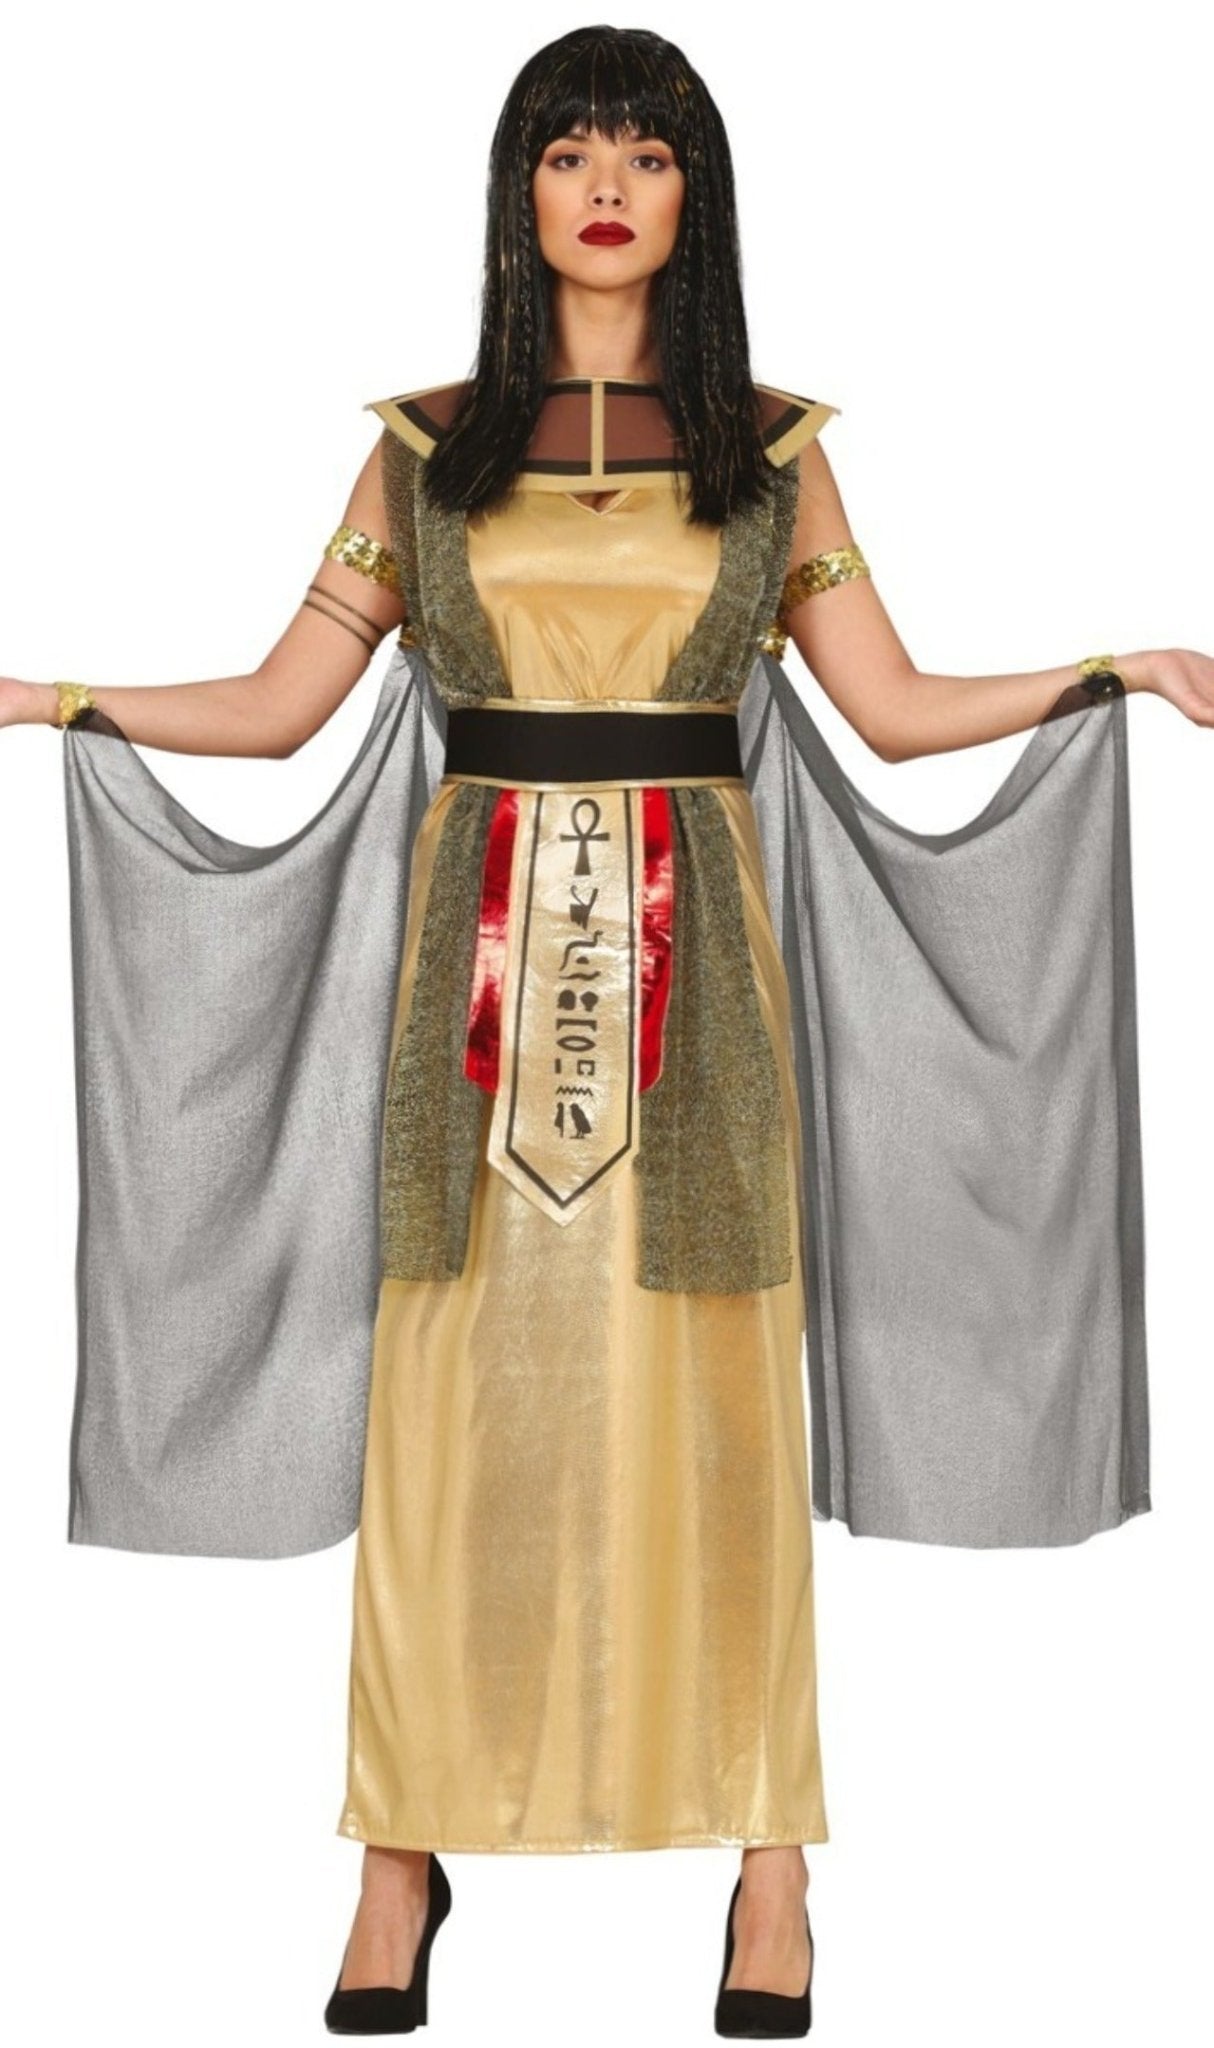 Acquista online il costume da Cleopatra egiziana adulto